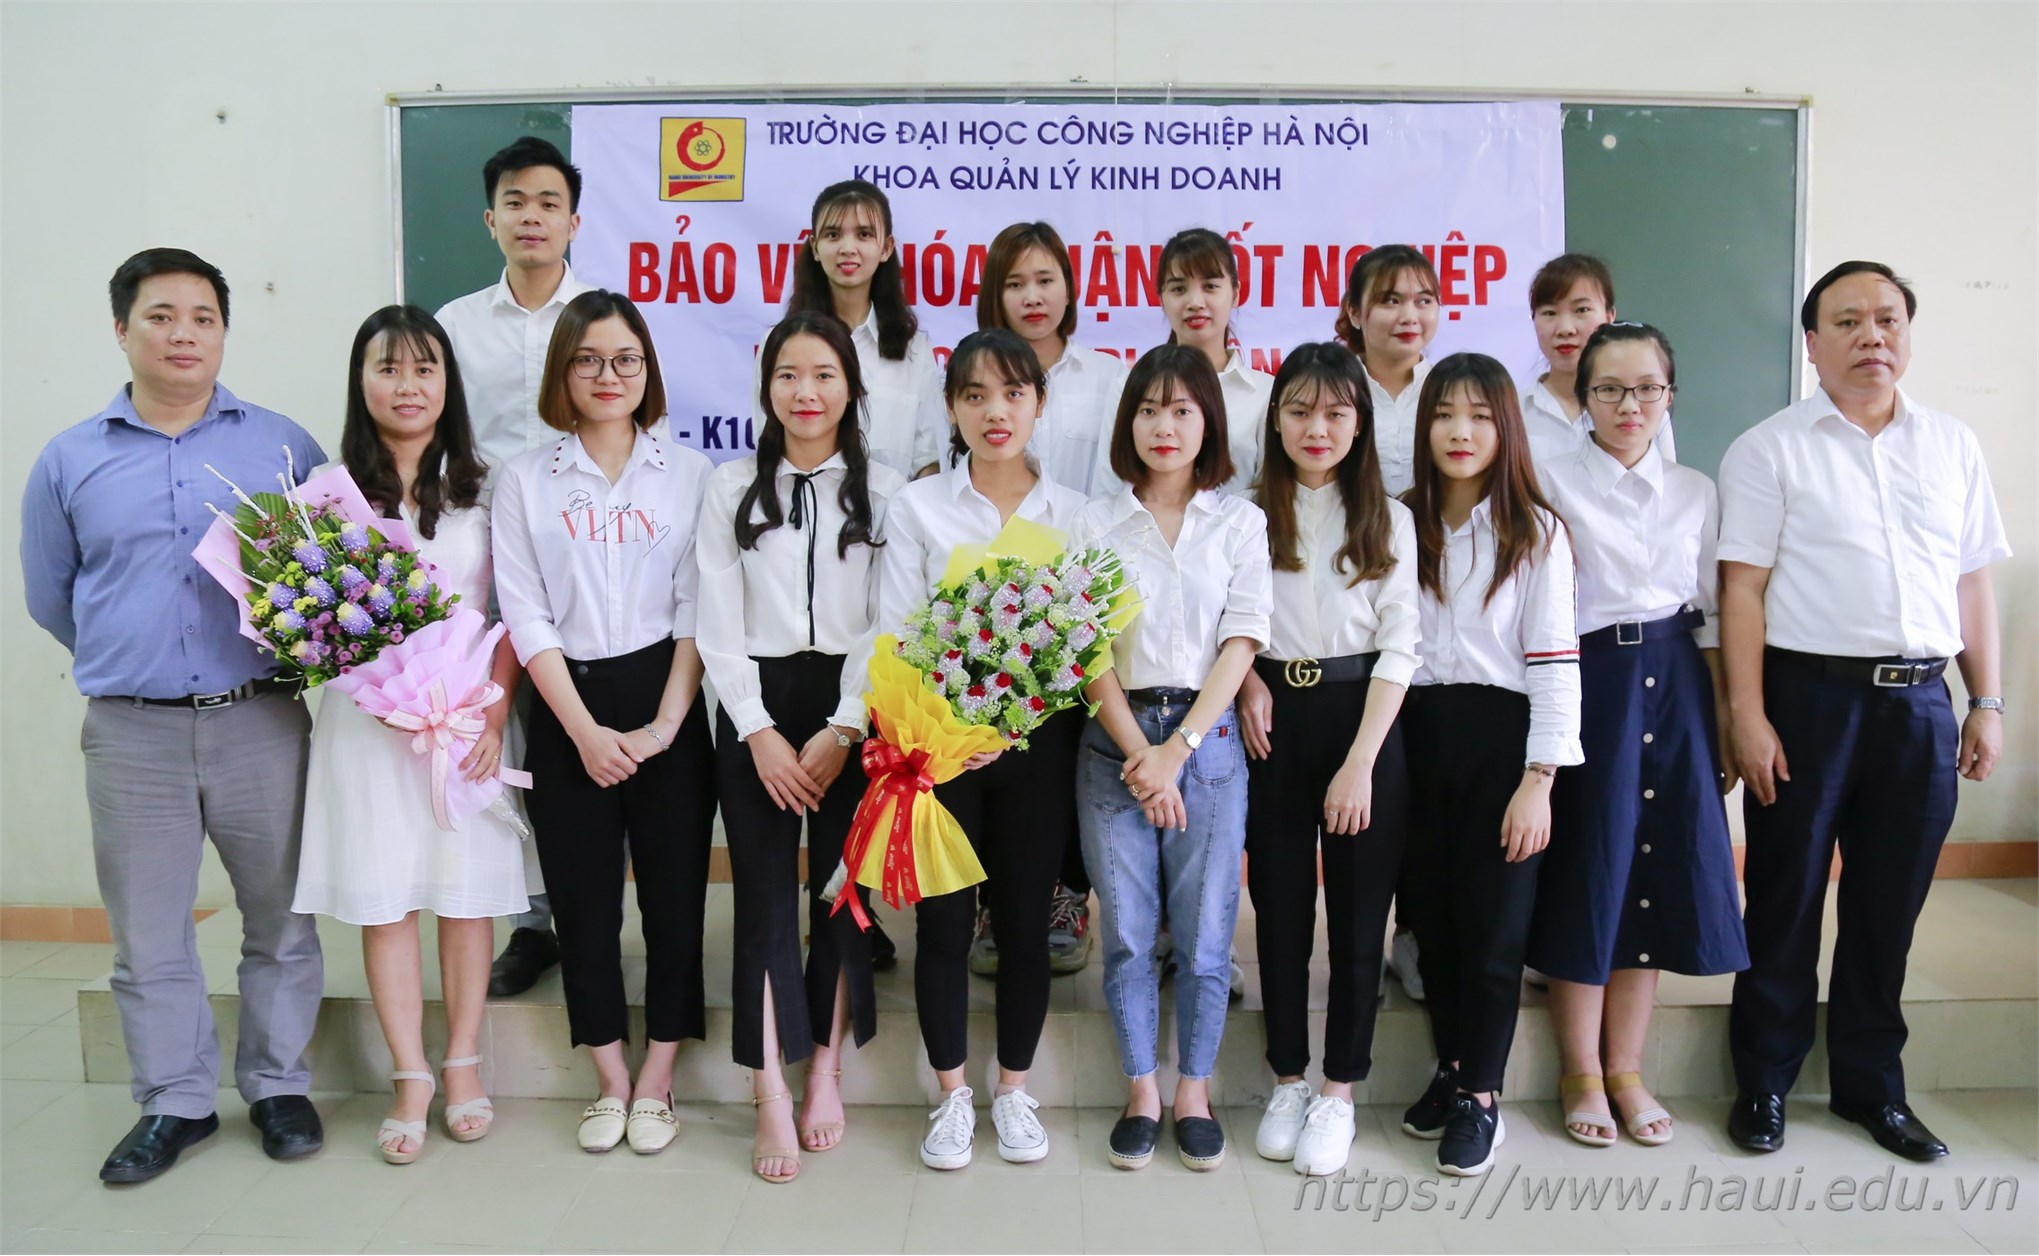 Tân cử nhân khoa Quản lý Kinh doanh, Đại học Công nghiệp Hà Nội tốt nghiệp với tấm bằng loại giỏi